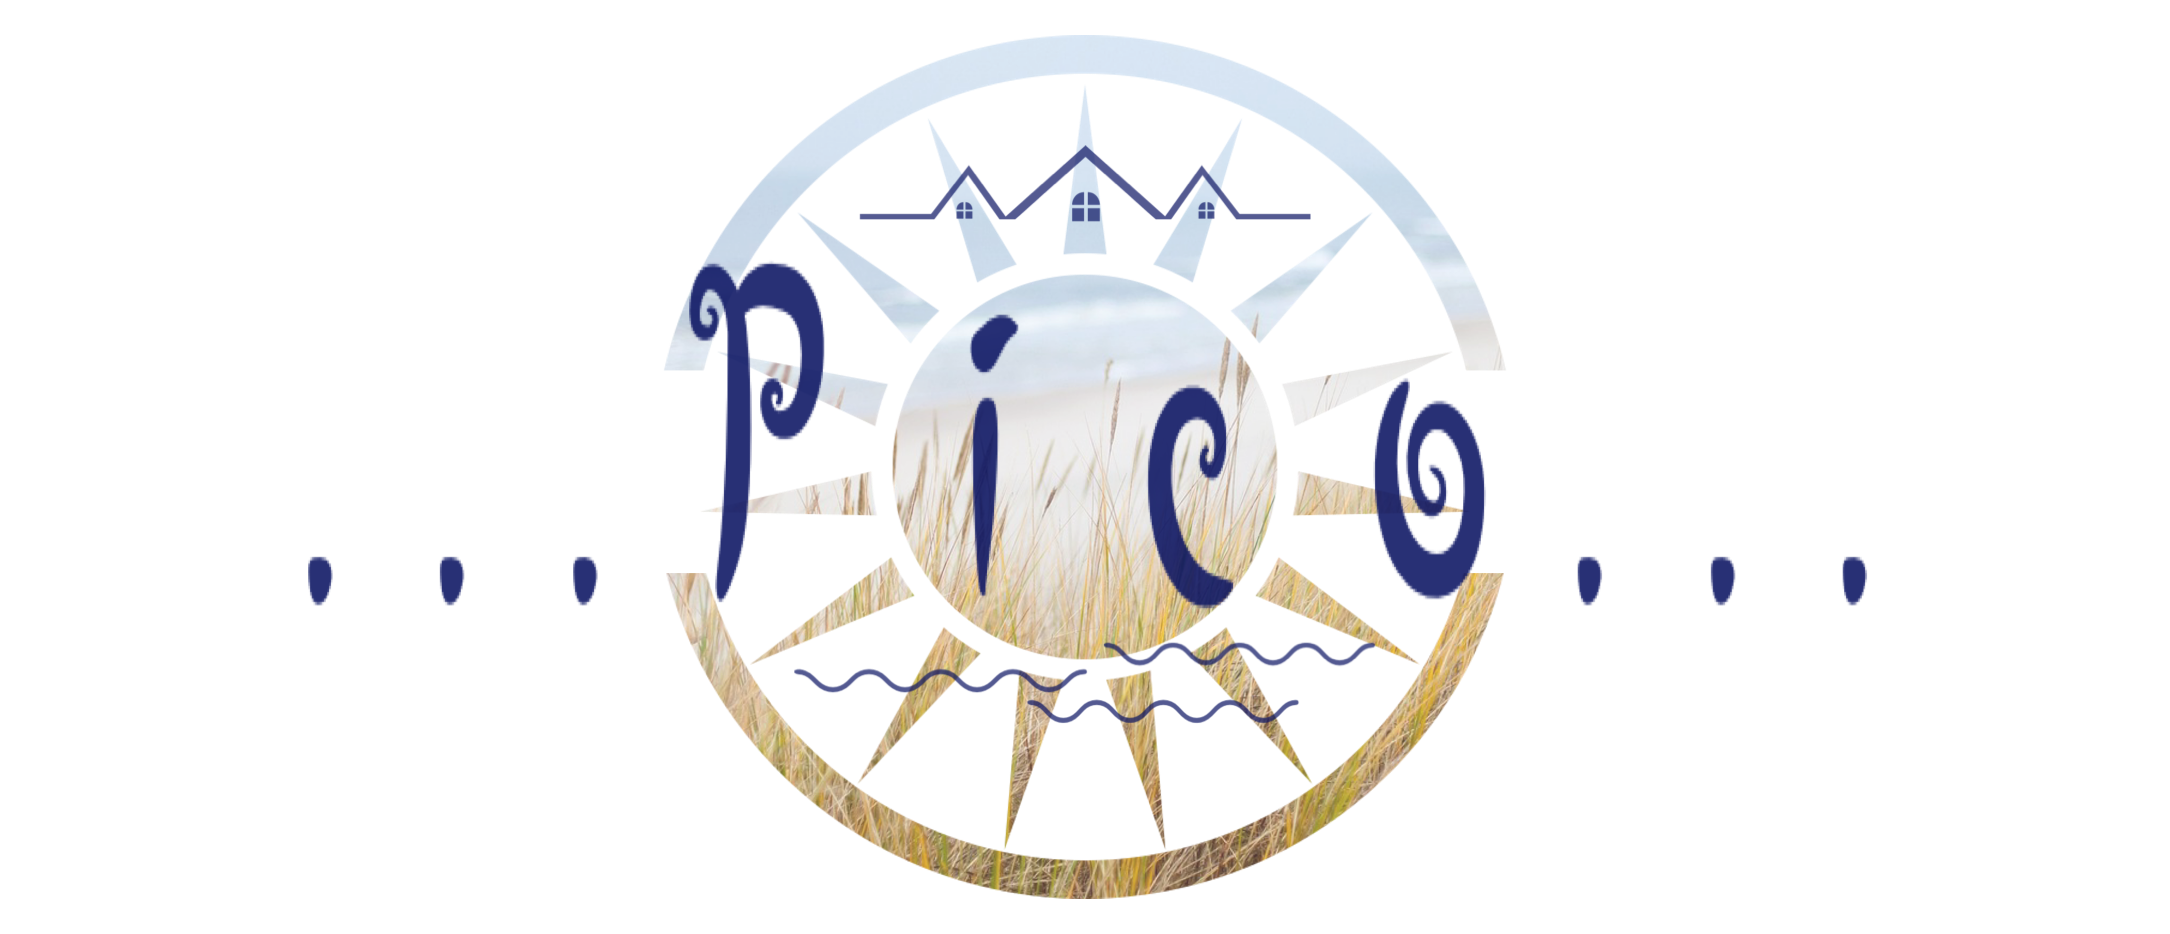 Das Logo des Ferienhauses 'Pico', das mit stilvollen Wellen und Häuserelementen gestaltet ist, vermittelt ein Gefühl von Ruhe und Entspannung am Meer.